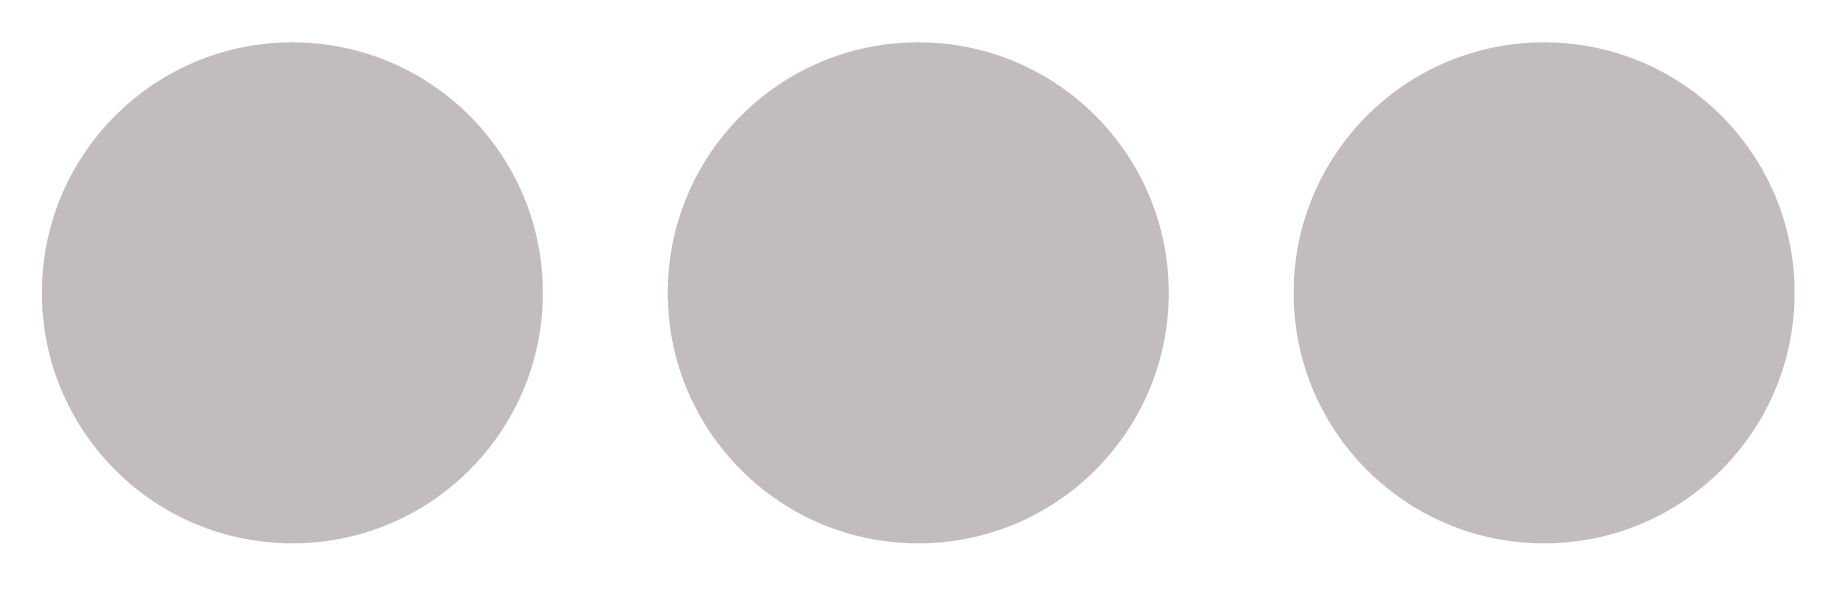 3 gray circles.